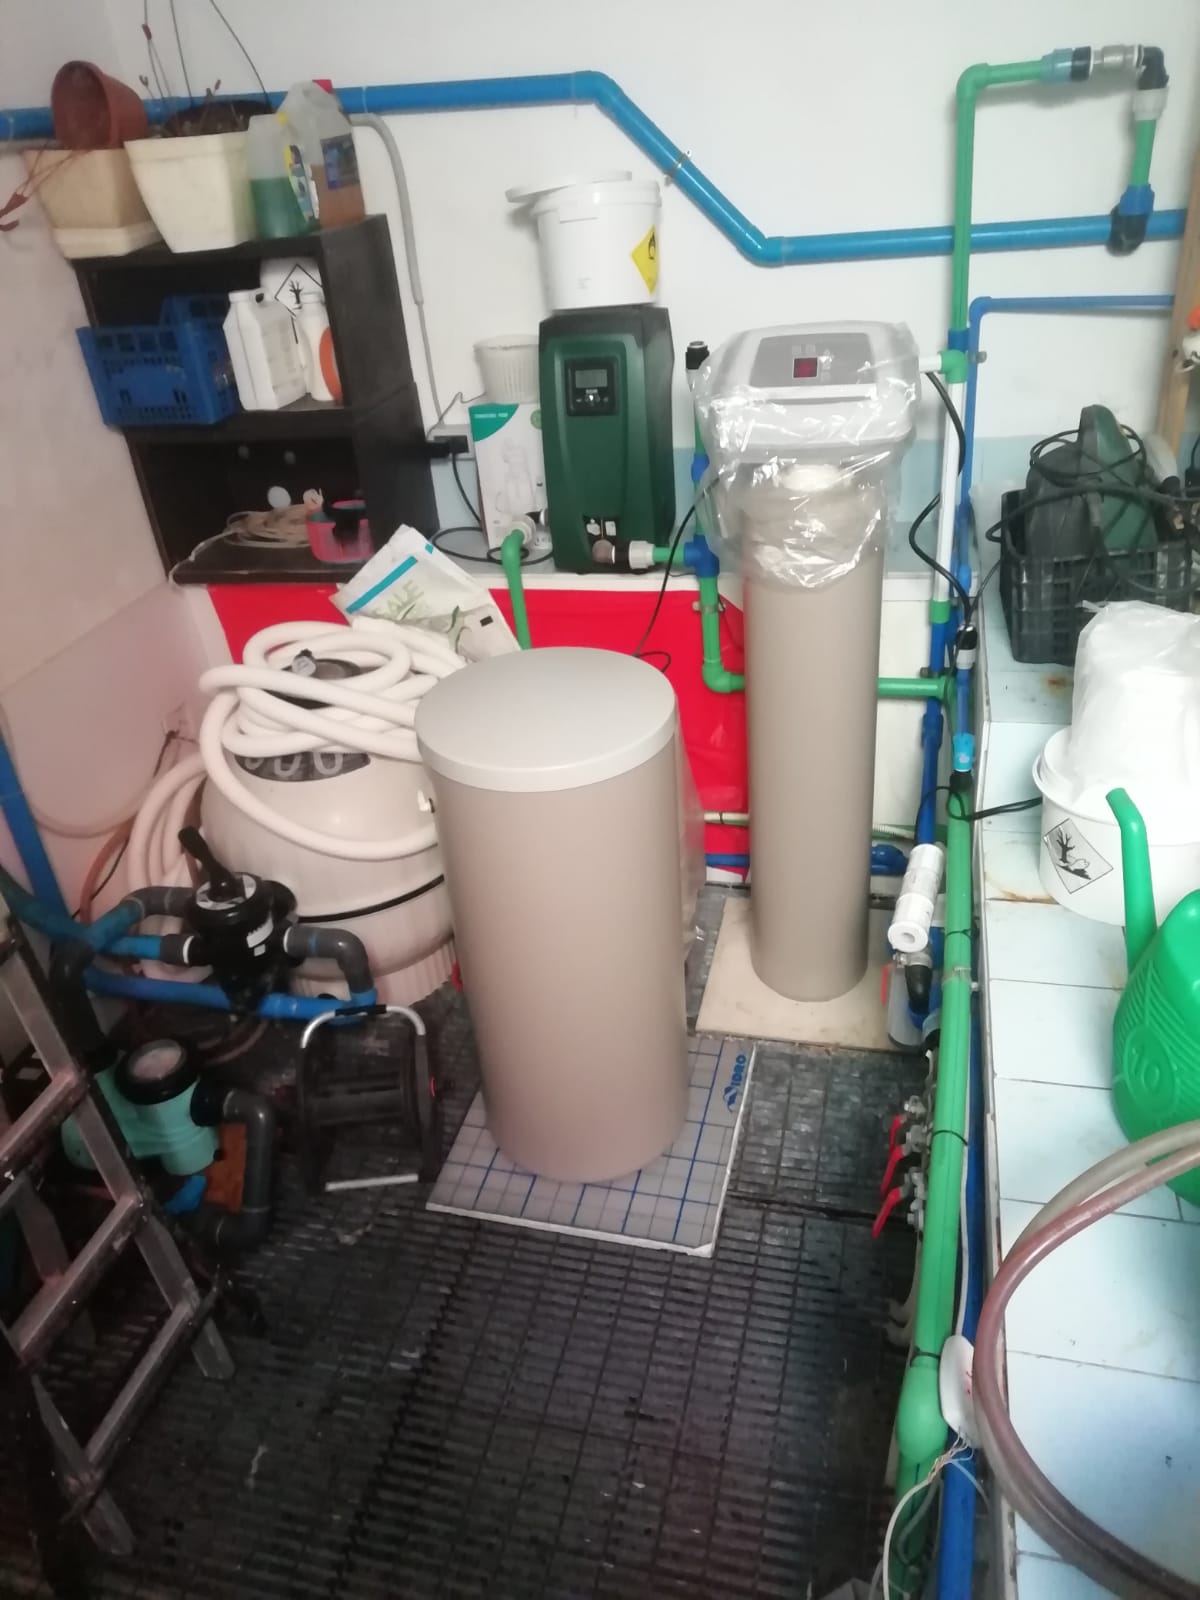 impianto idraulico autoclave con sistema filtrazione, addolcimento e pressurazione ad inverter